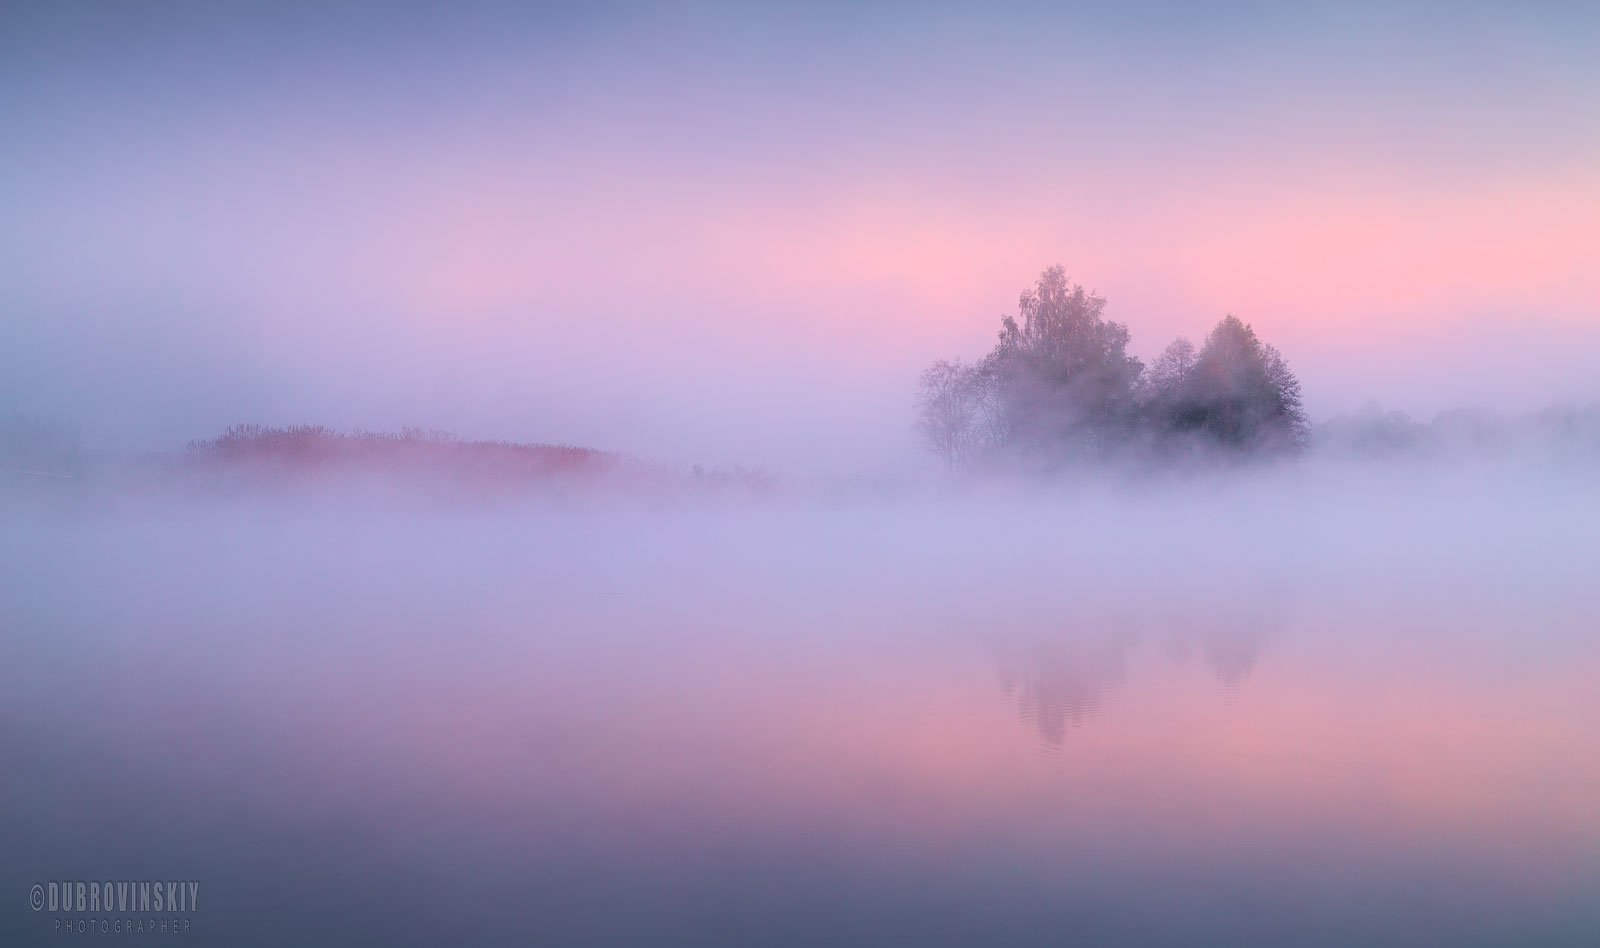 река, туман, рассвет, дерево, лето, мираж, Михаил Дубровинский